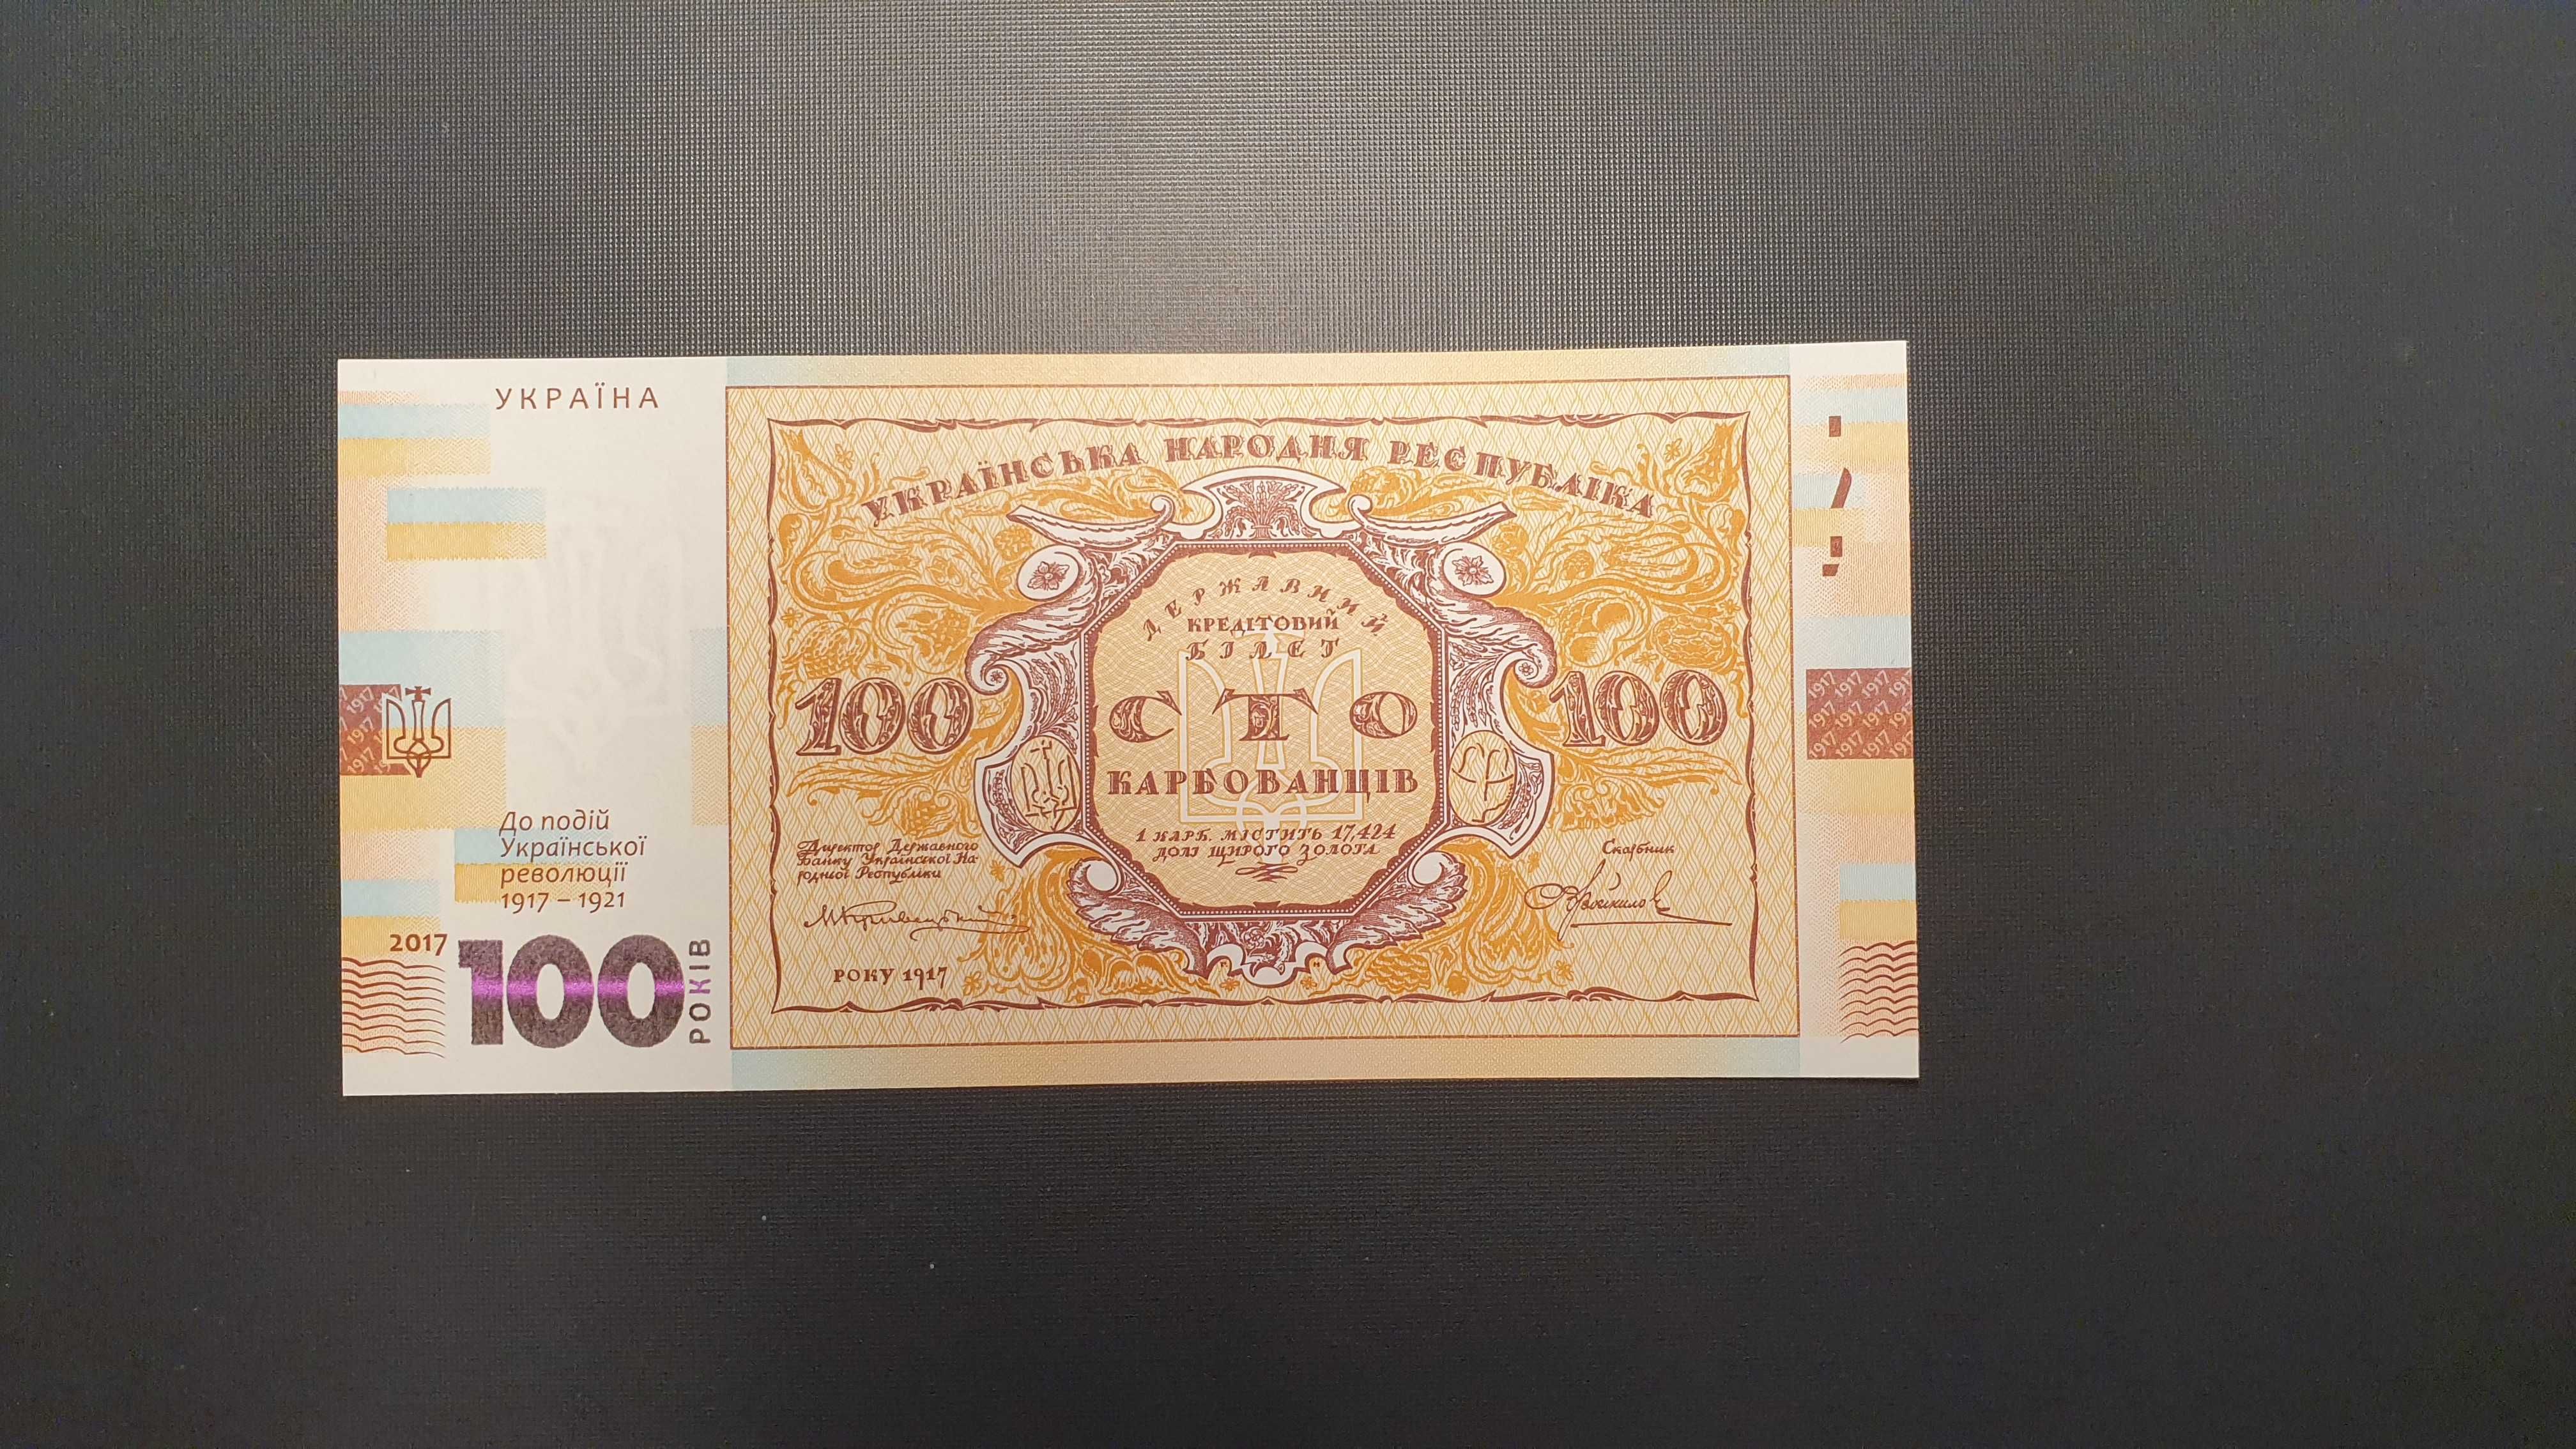 Bancnote 100 griven Ukraine 1917-1921 UNC GEM consecutive